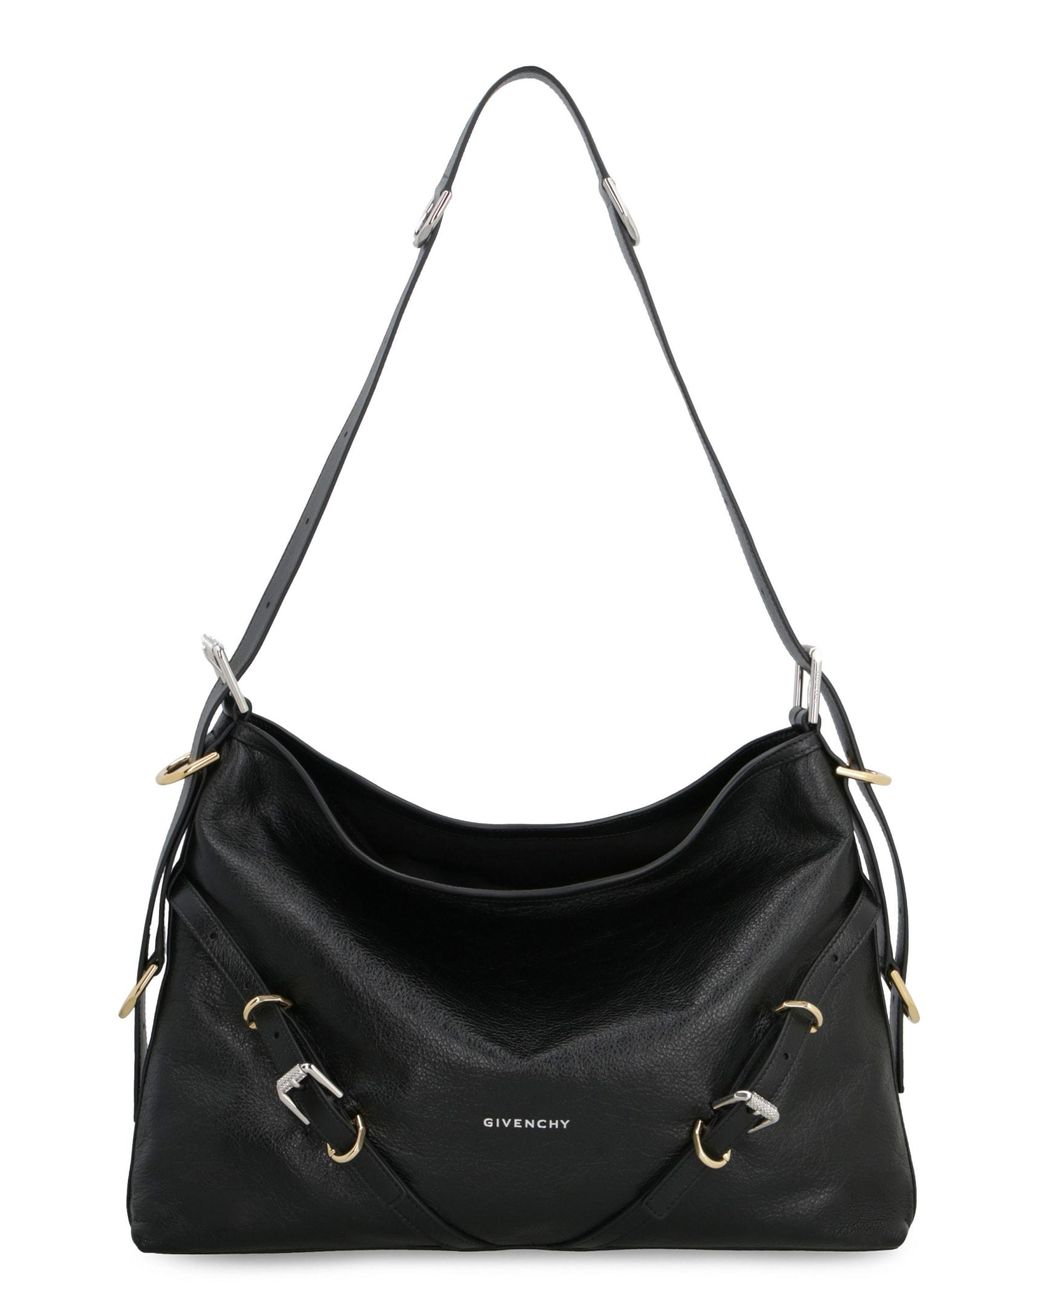 Givenchy Voyou Leather Shoulder Bag in Black | Lyst UK